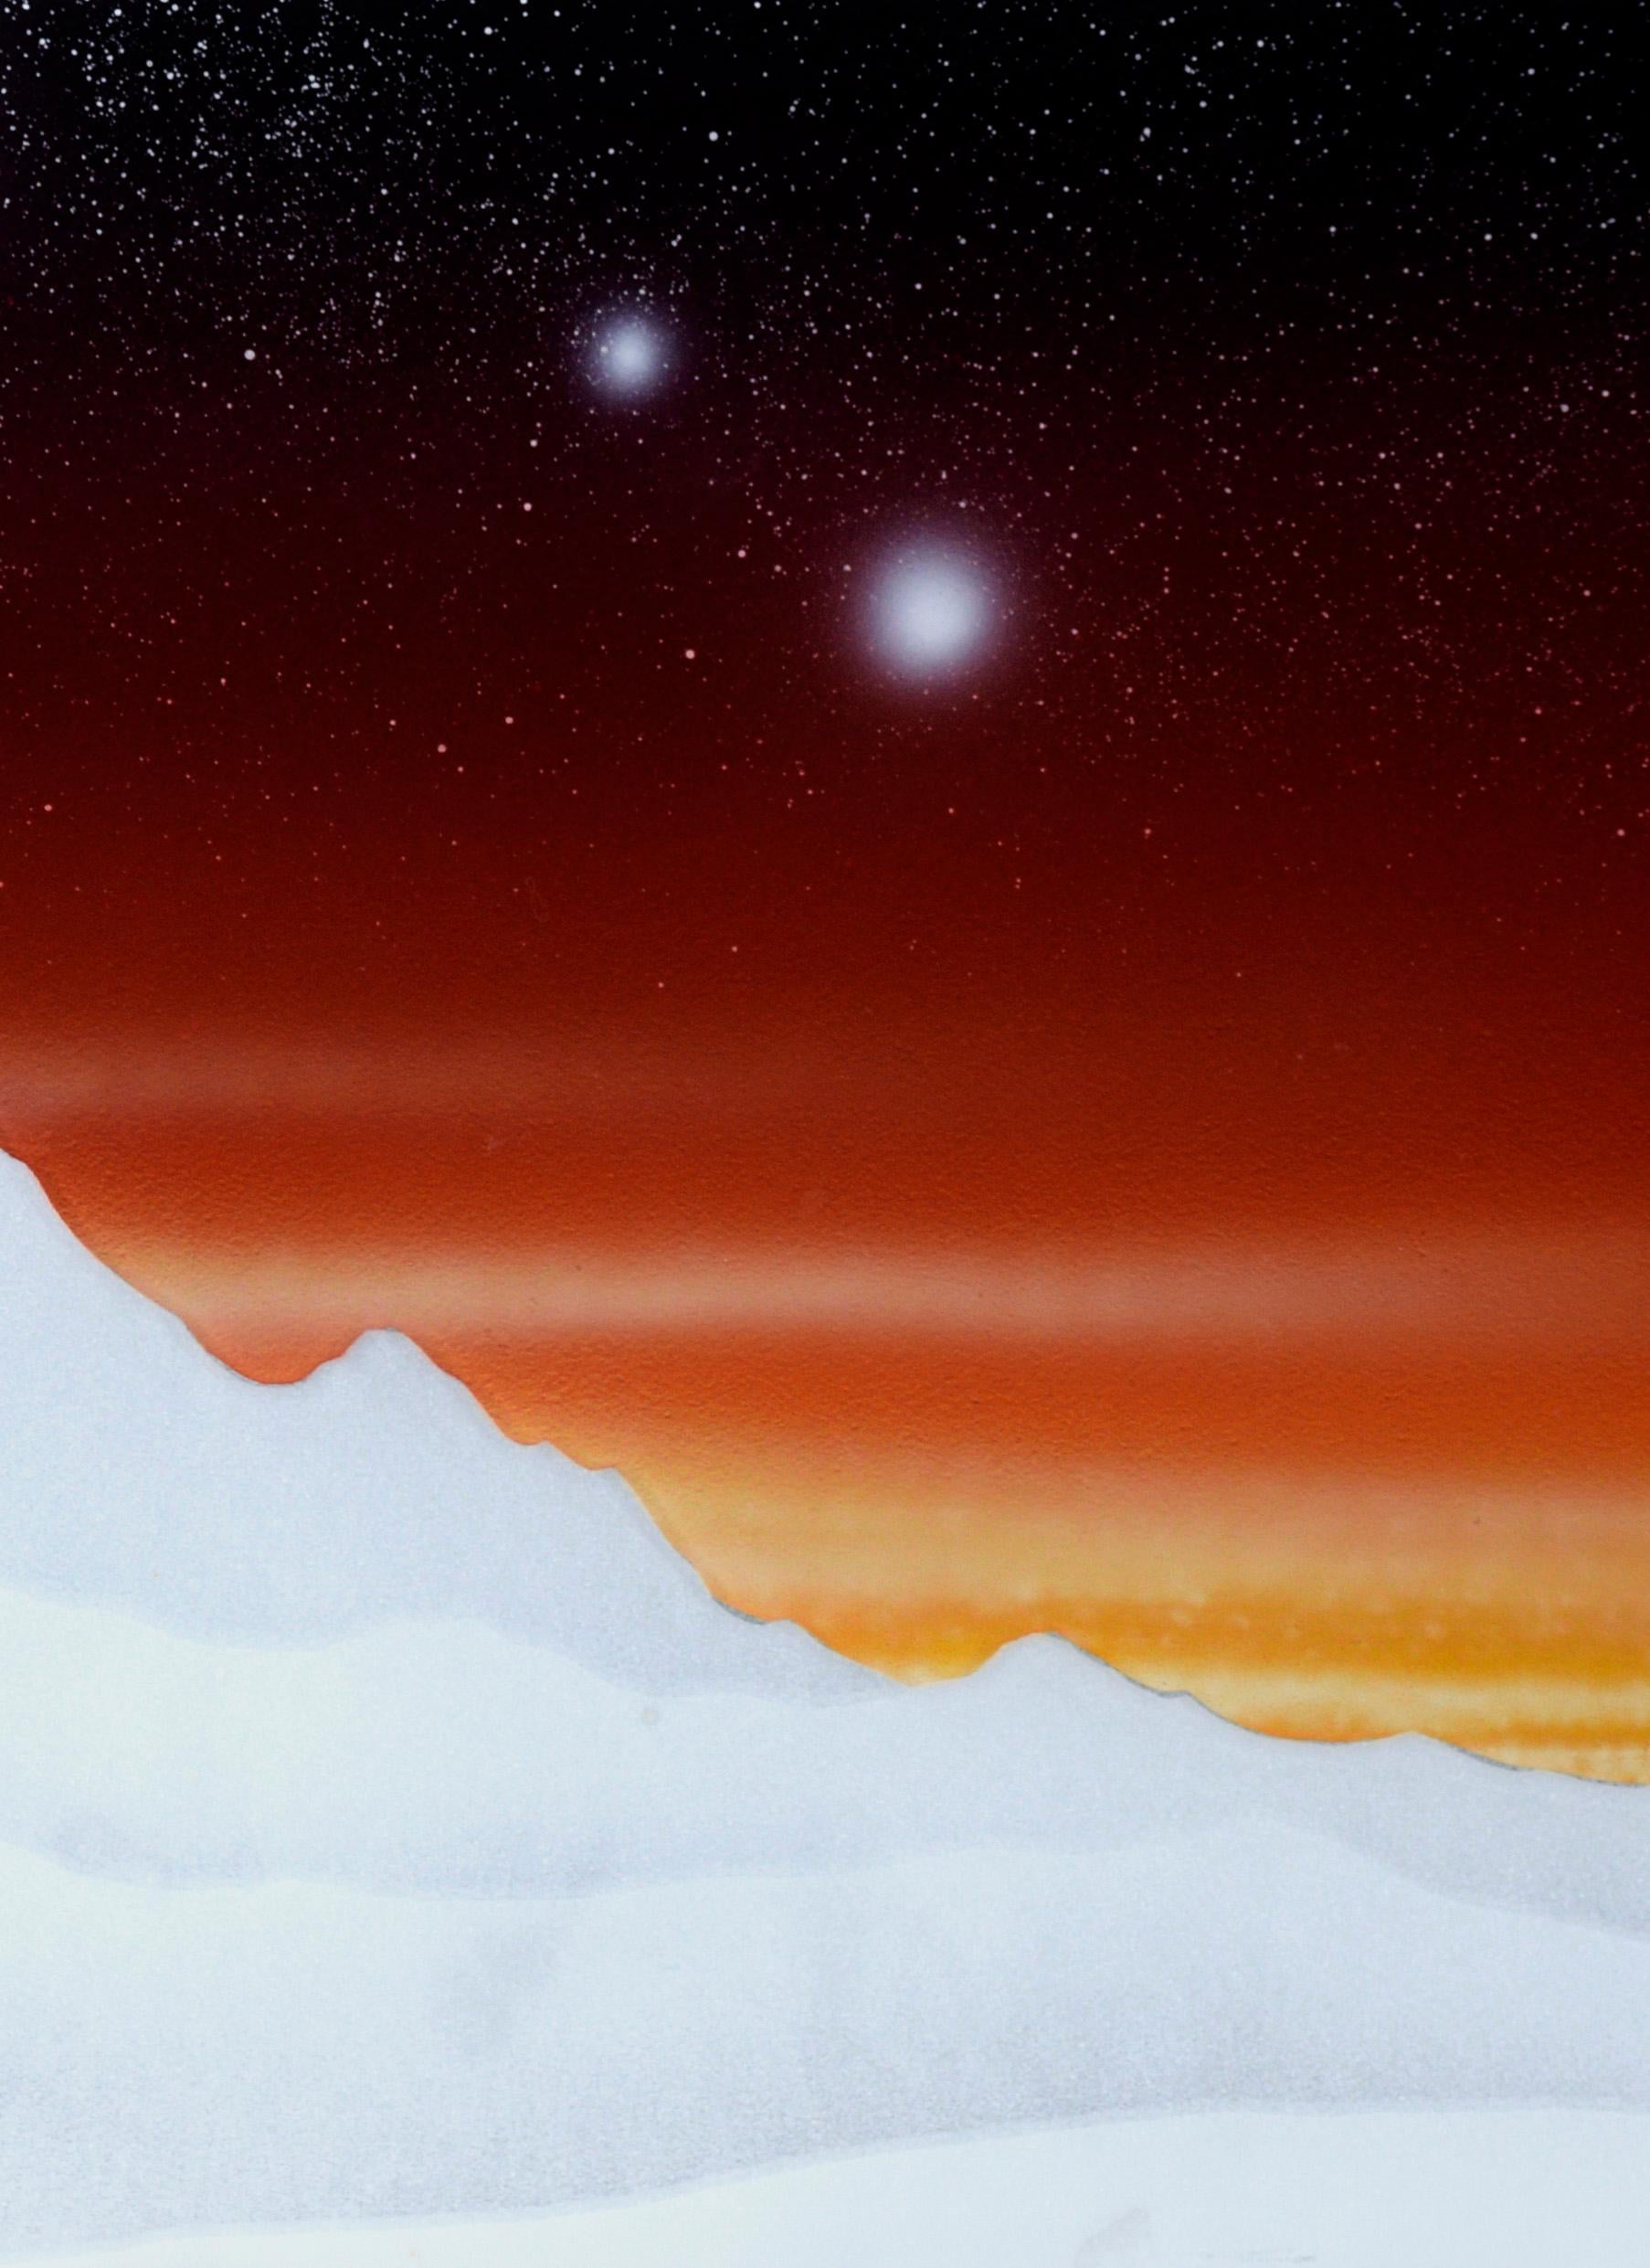 „Nightfall“ – rückseitig bemalte Radierung auf Glas, limitierte Auflage 1/100

Ein spiegelnder Mond erhebt sich über Berggipfeln vor einem tiefvioletten Himmel, der in dieser hyperrealistischen Planetenszene des Künstlers Michael Bates (Amerikaner,